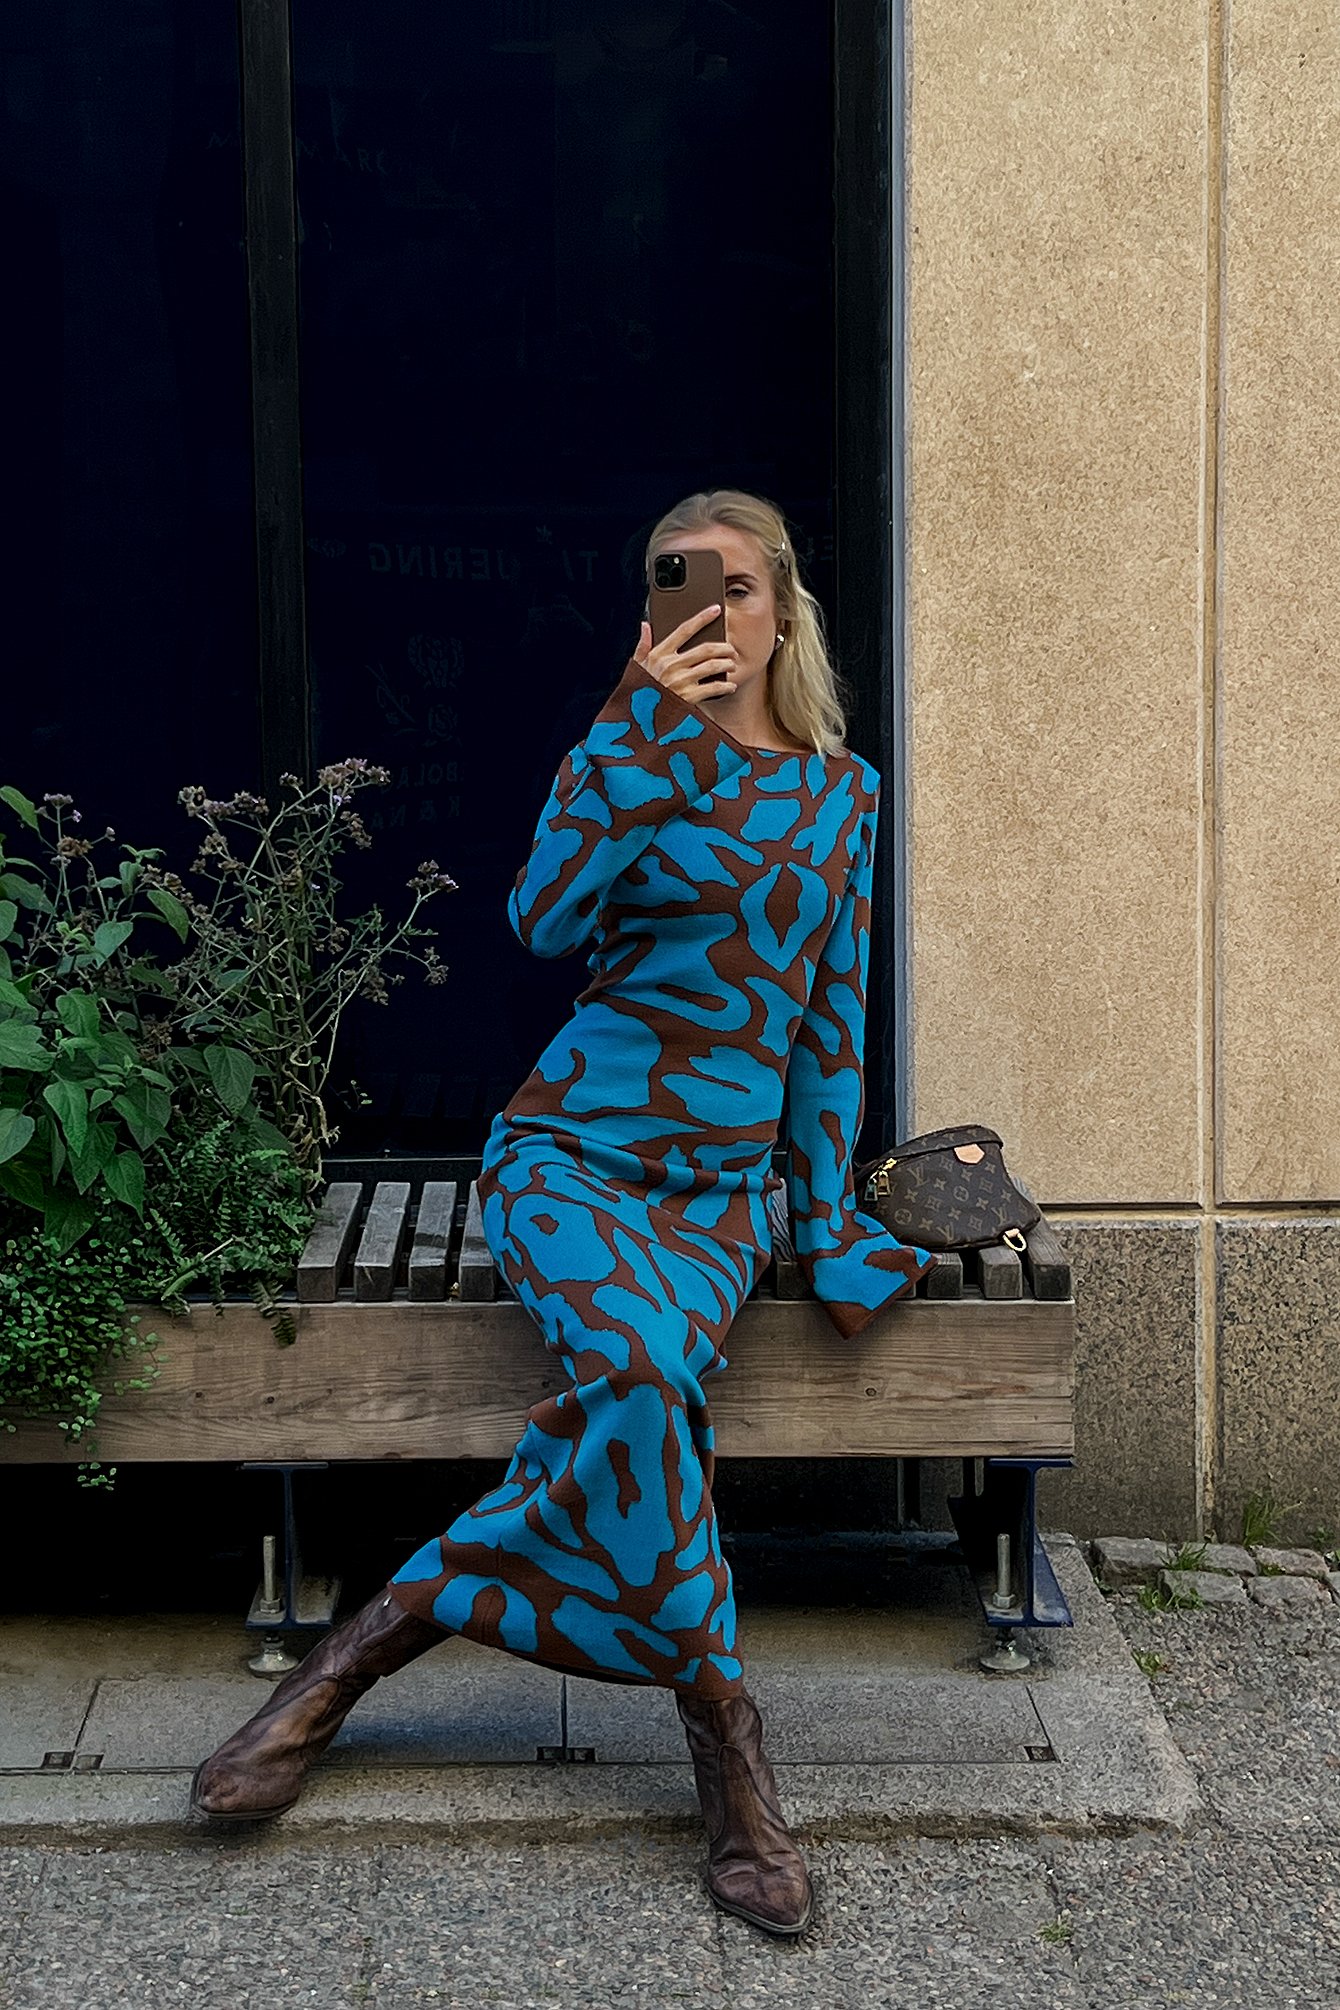 Brown/Blue Dzianinowa sukienka maxi z szerokimi rękawami